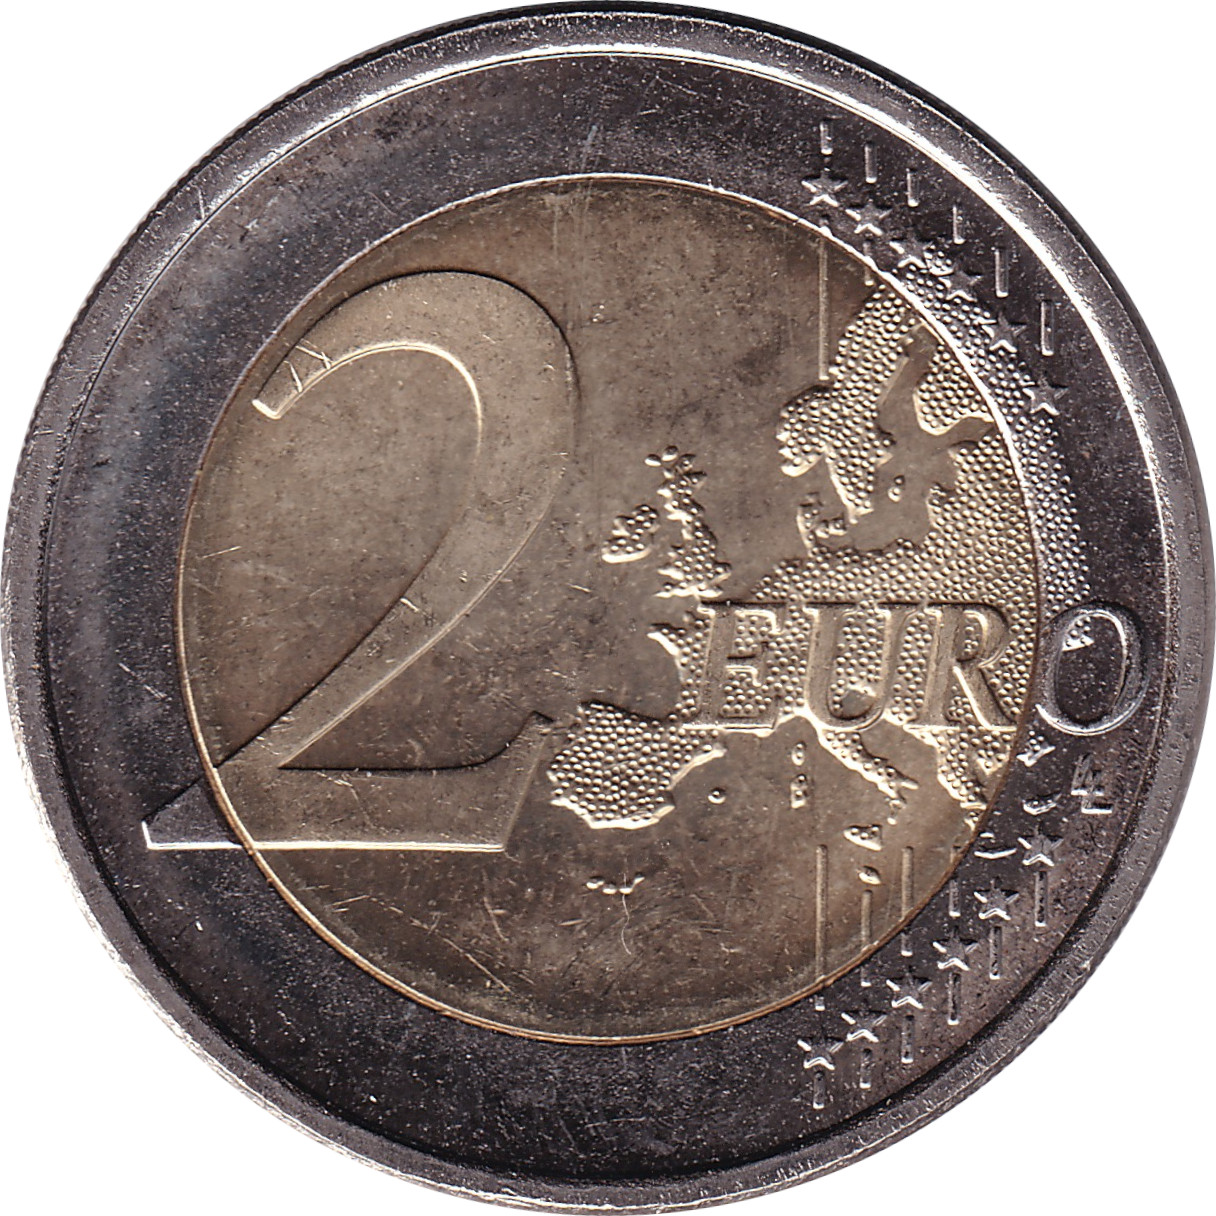 2 euro - Franz Eemil Sillanpaa